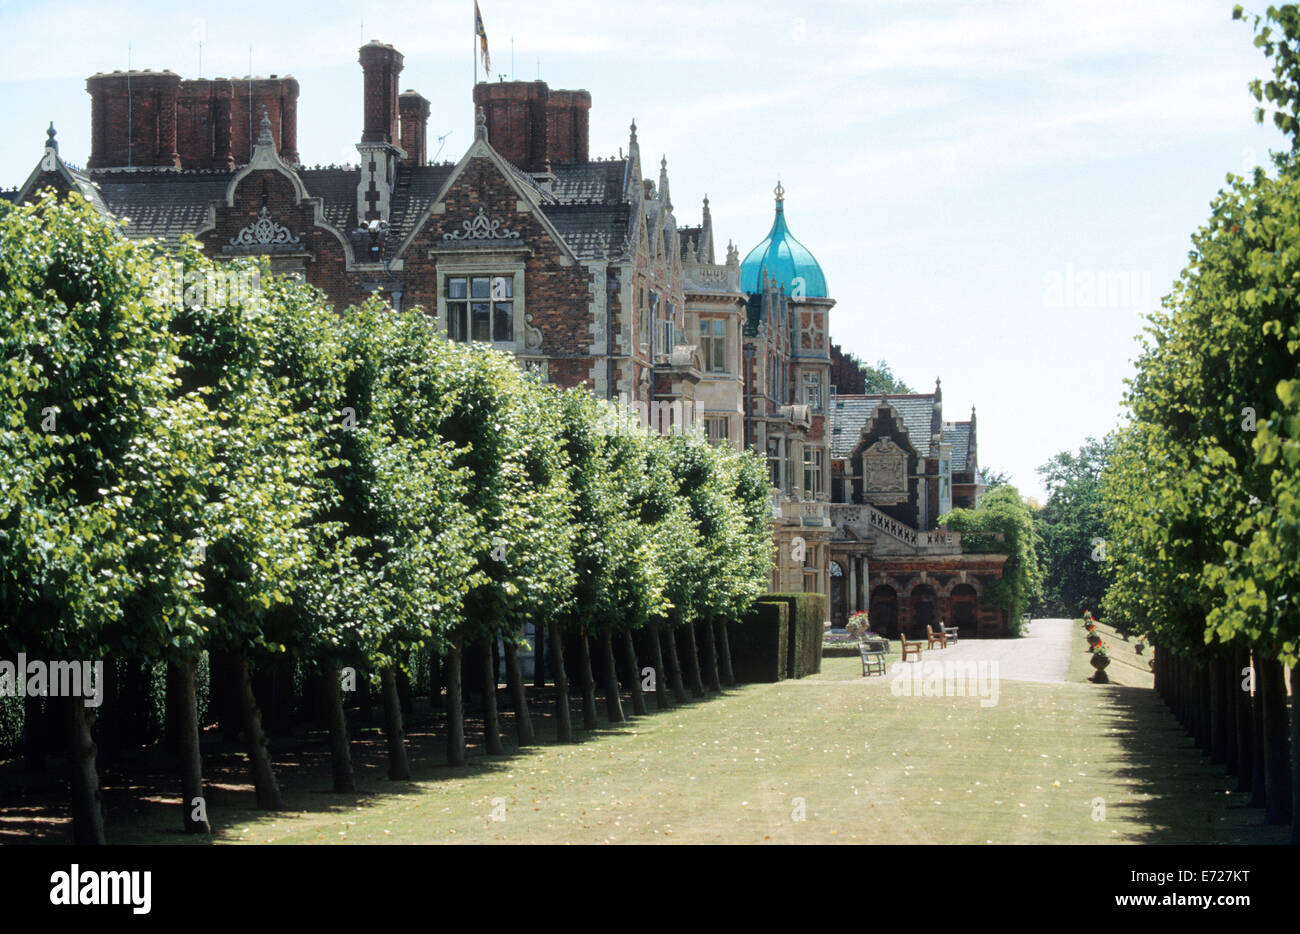 Sandringham House - Norfolk accueil de Sa Majesté la Reine Elizabeth II, la Grande-Bretagne. Banque D'Images